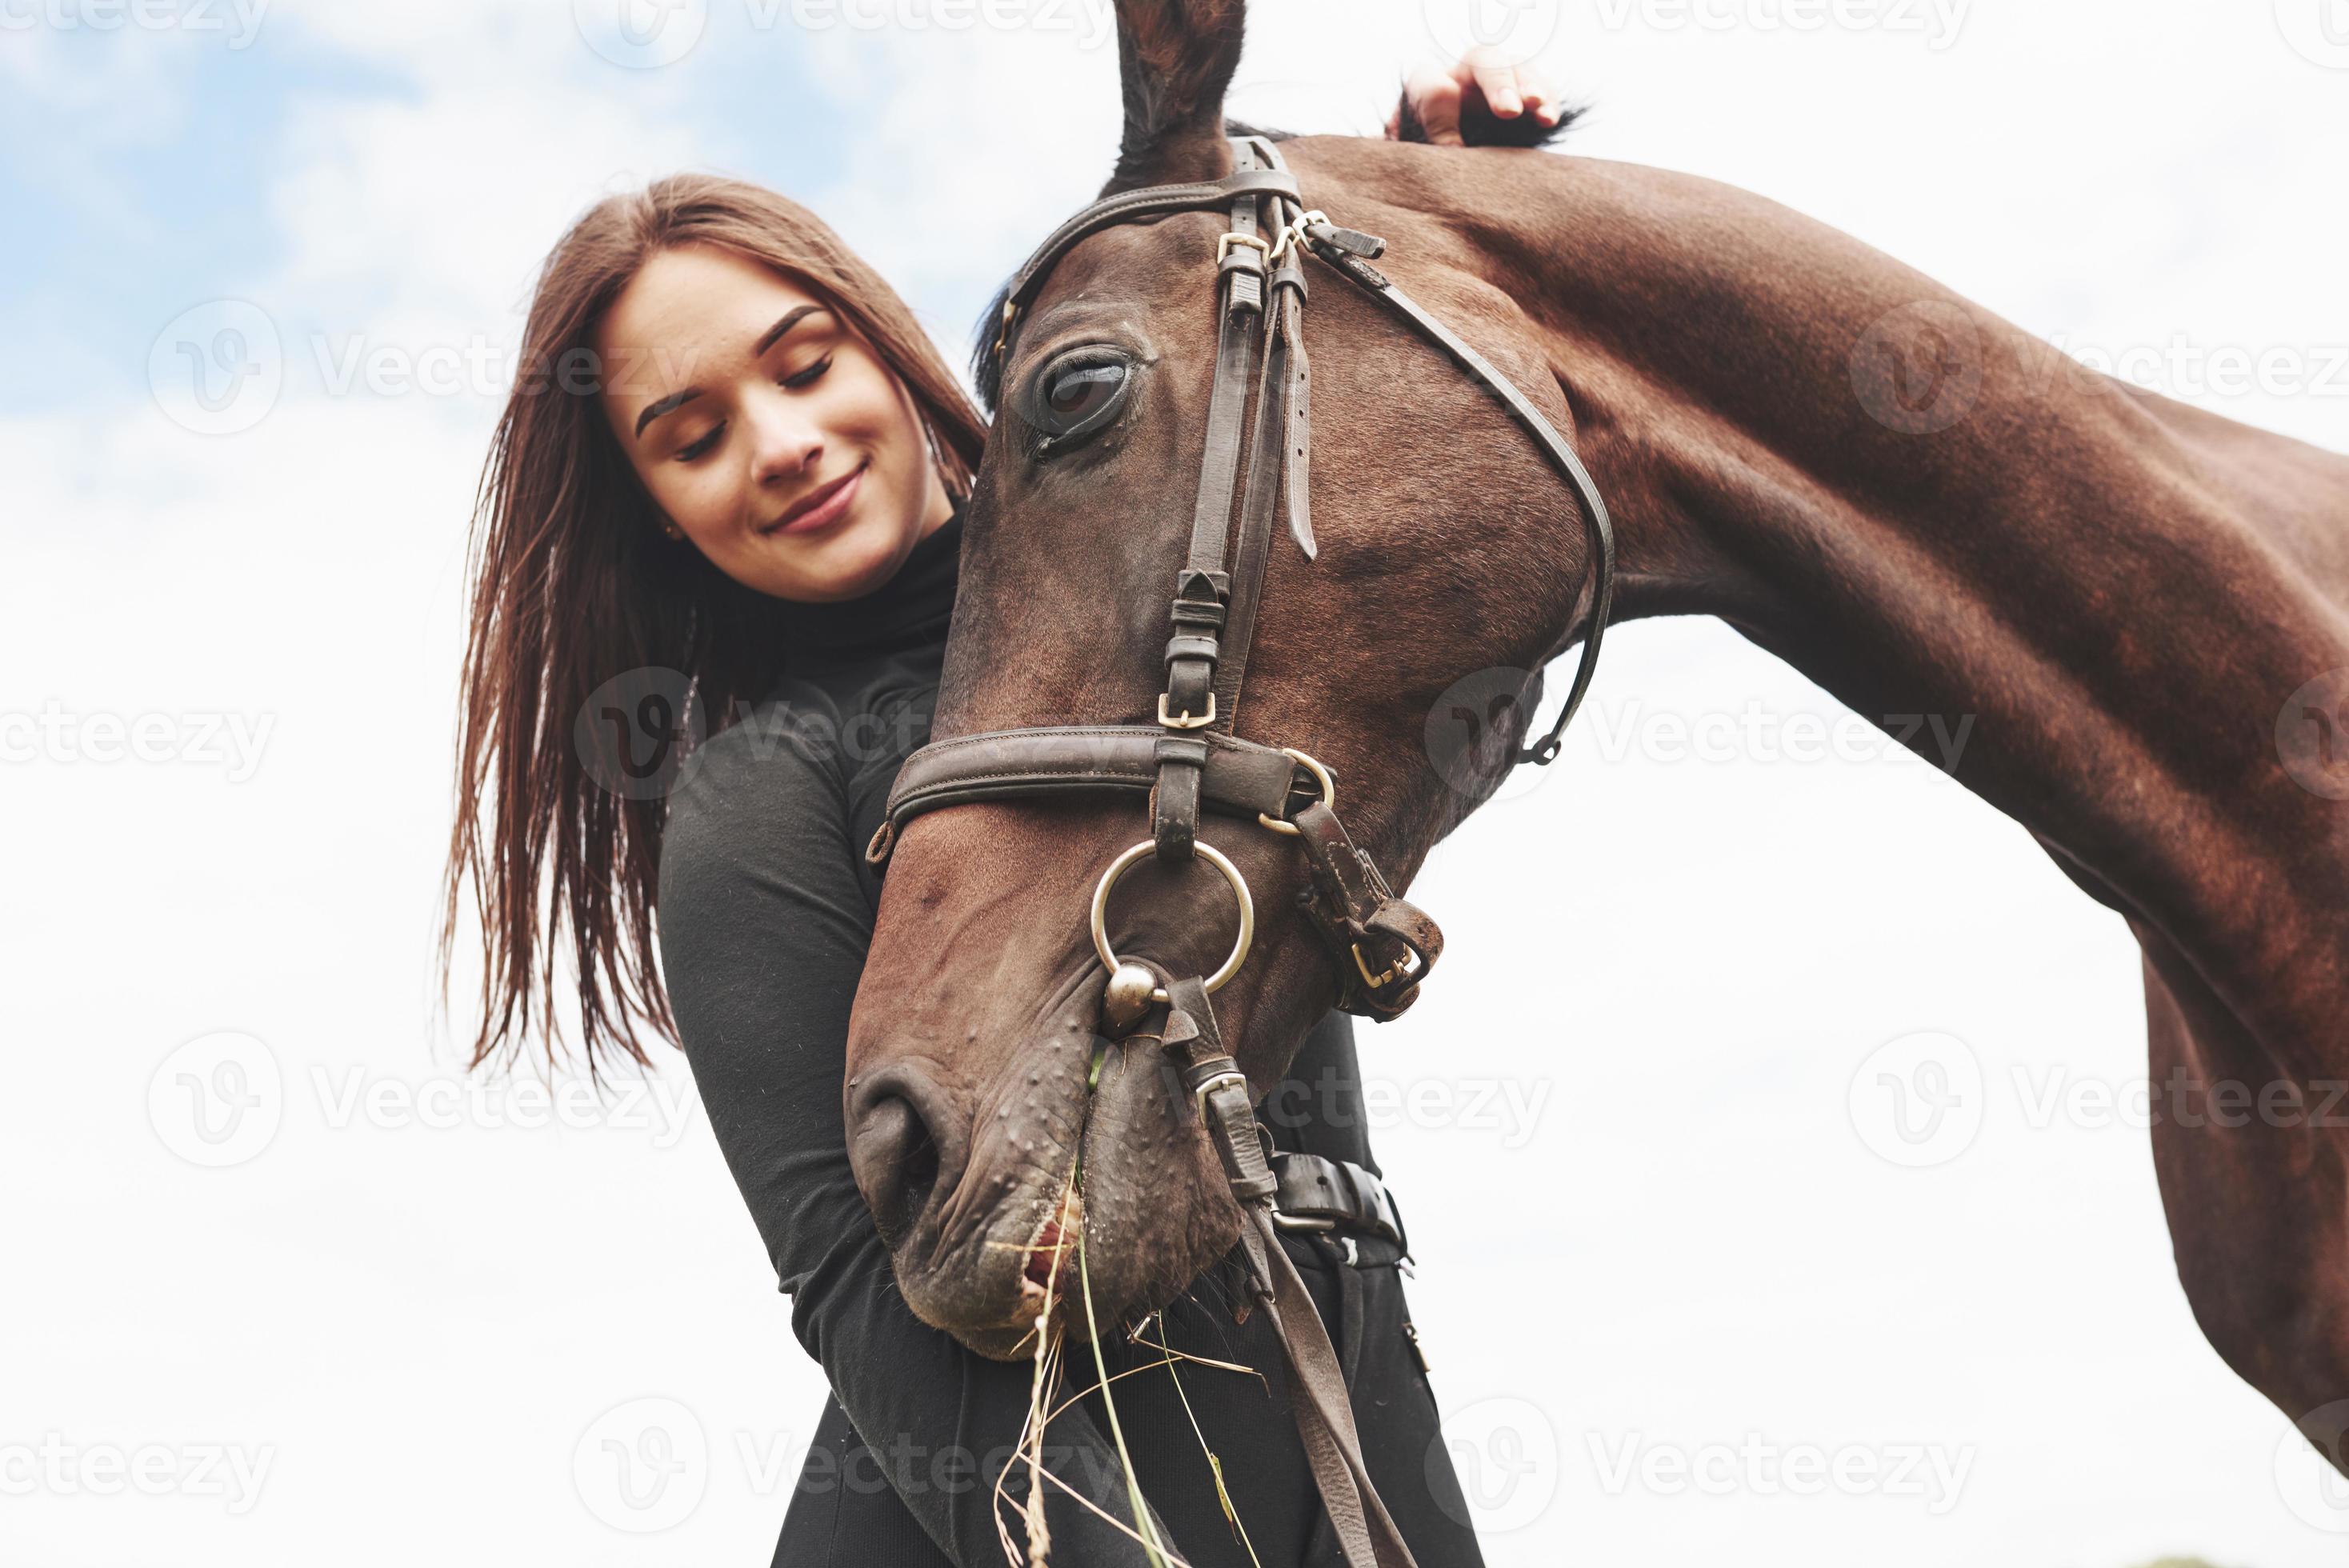 https://static.vecteezy.com/ti/photos-gratuite/p2/3673434-une-fille-heureuse-communique-avec-son-cheval-prefere-la-fille-aime-les-animaux-et-l-equitation-photo.jpg